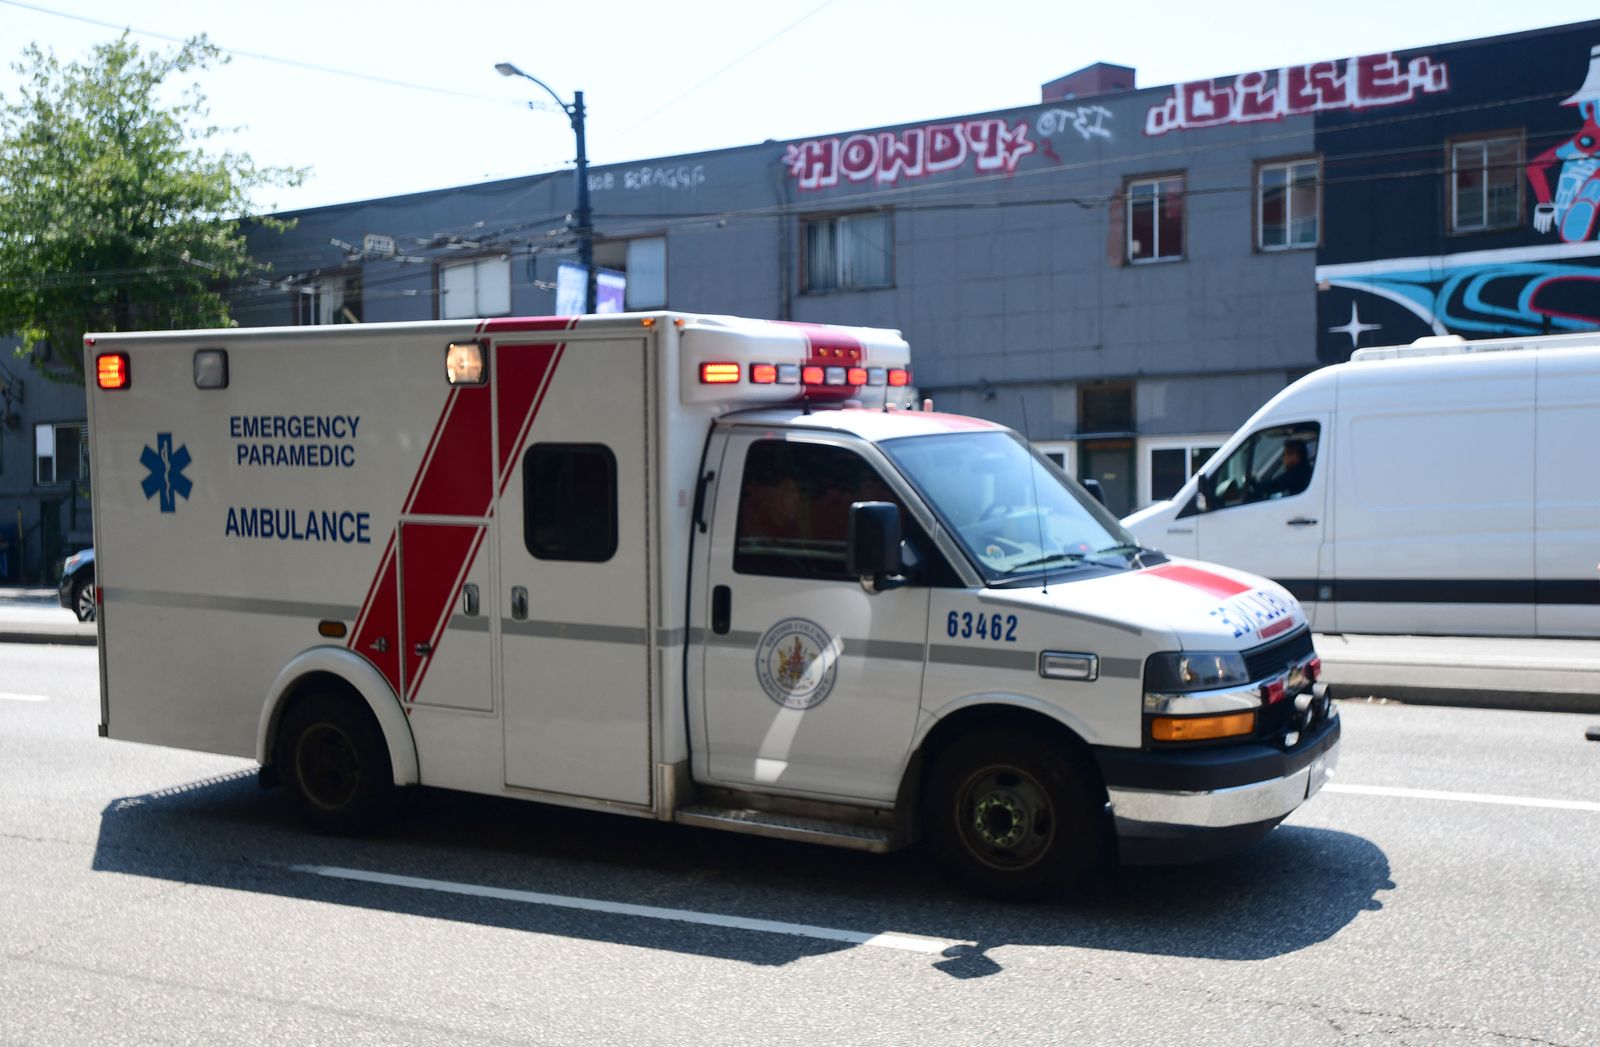 سيارة إسعاف لنقل مصابين بالانهاك الحراري خلال الطقس الحار في فانكوفر. كولومبيا البريطانية.  - AFP